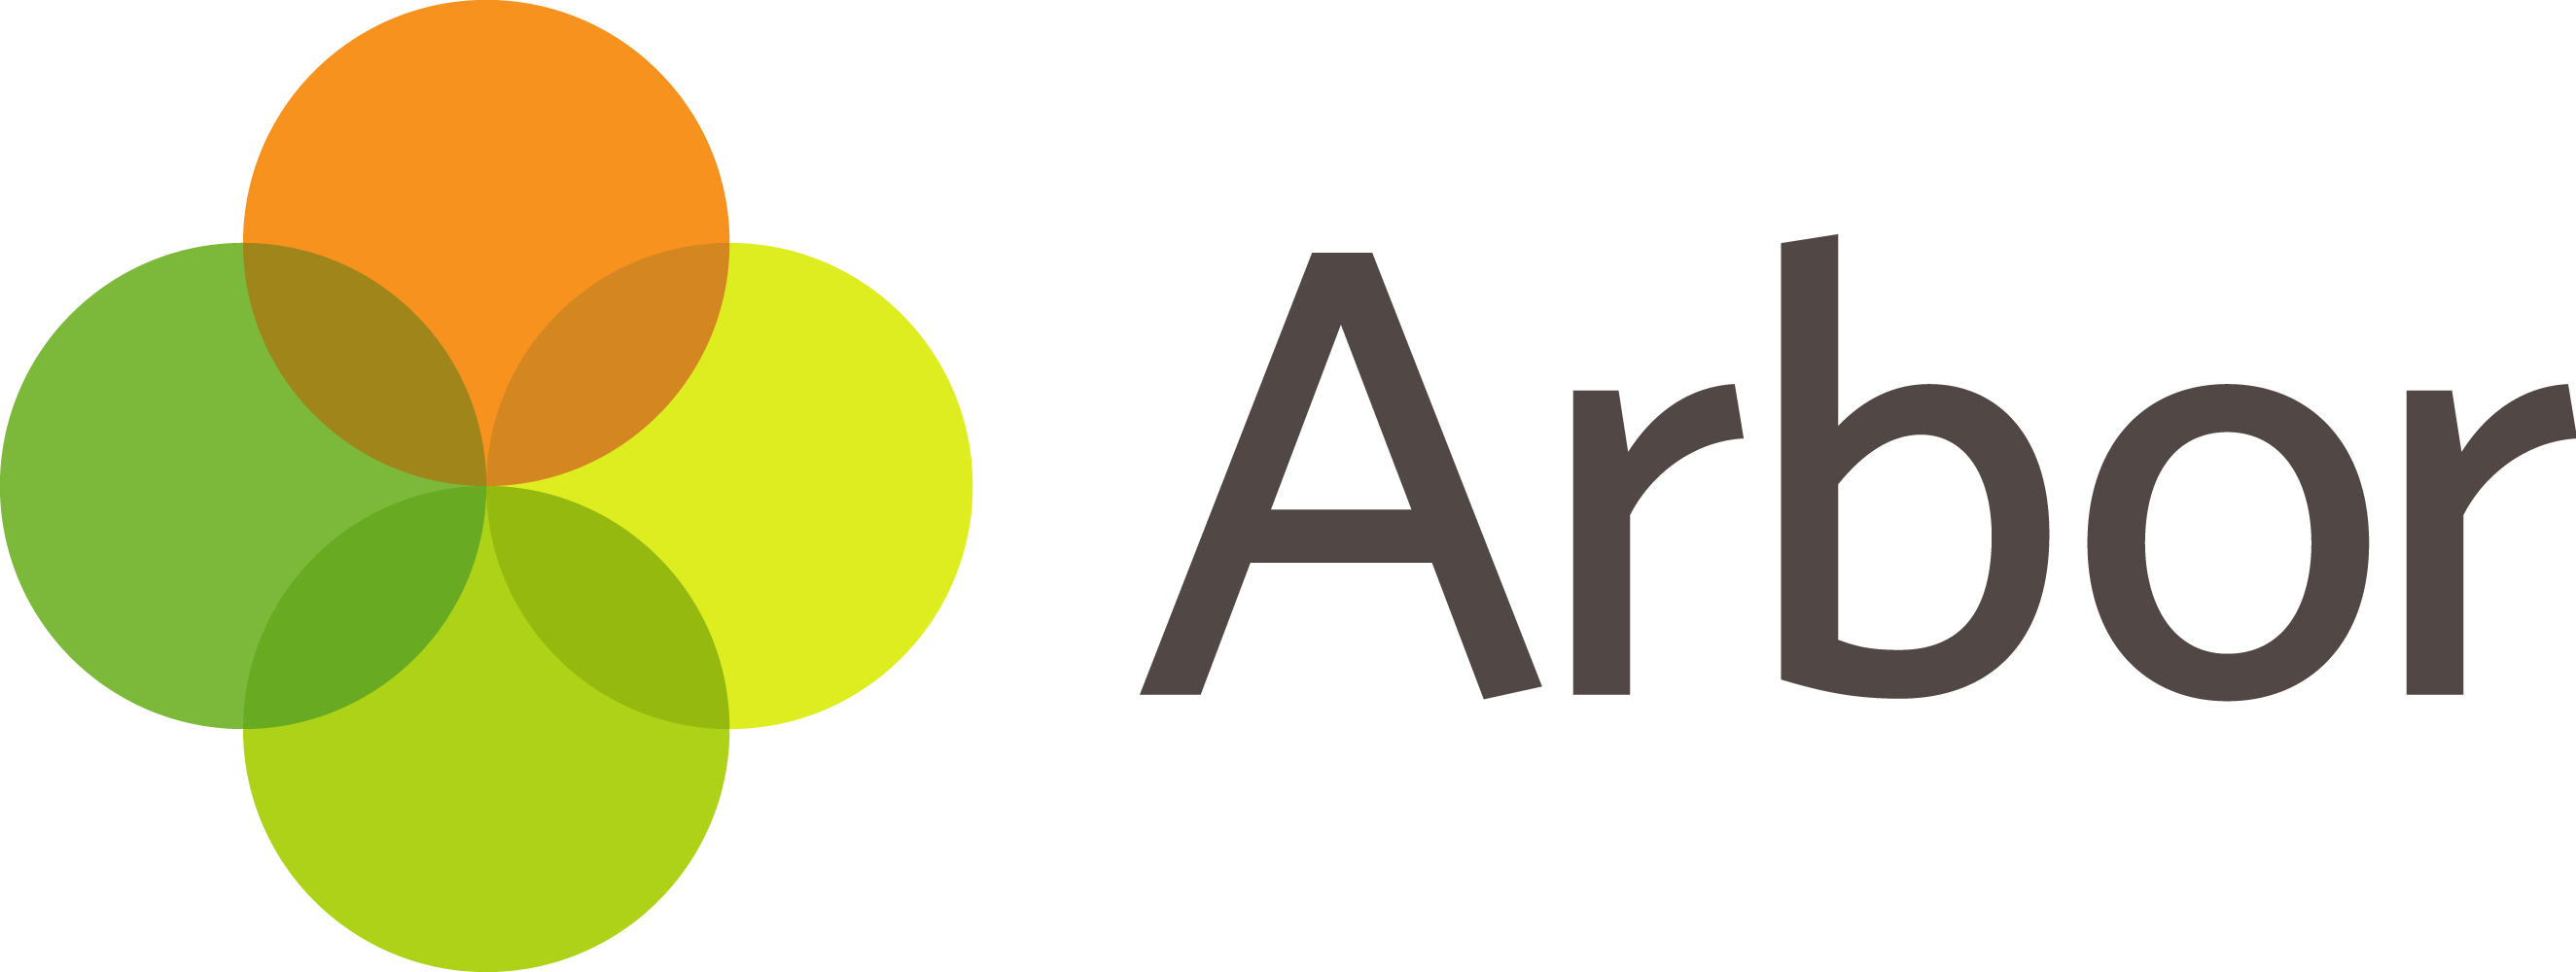 Arbor Logo - For white backgrounds